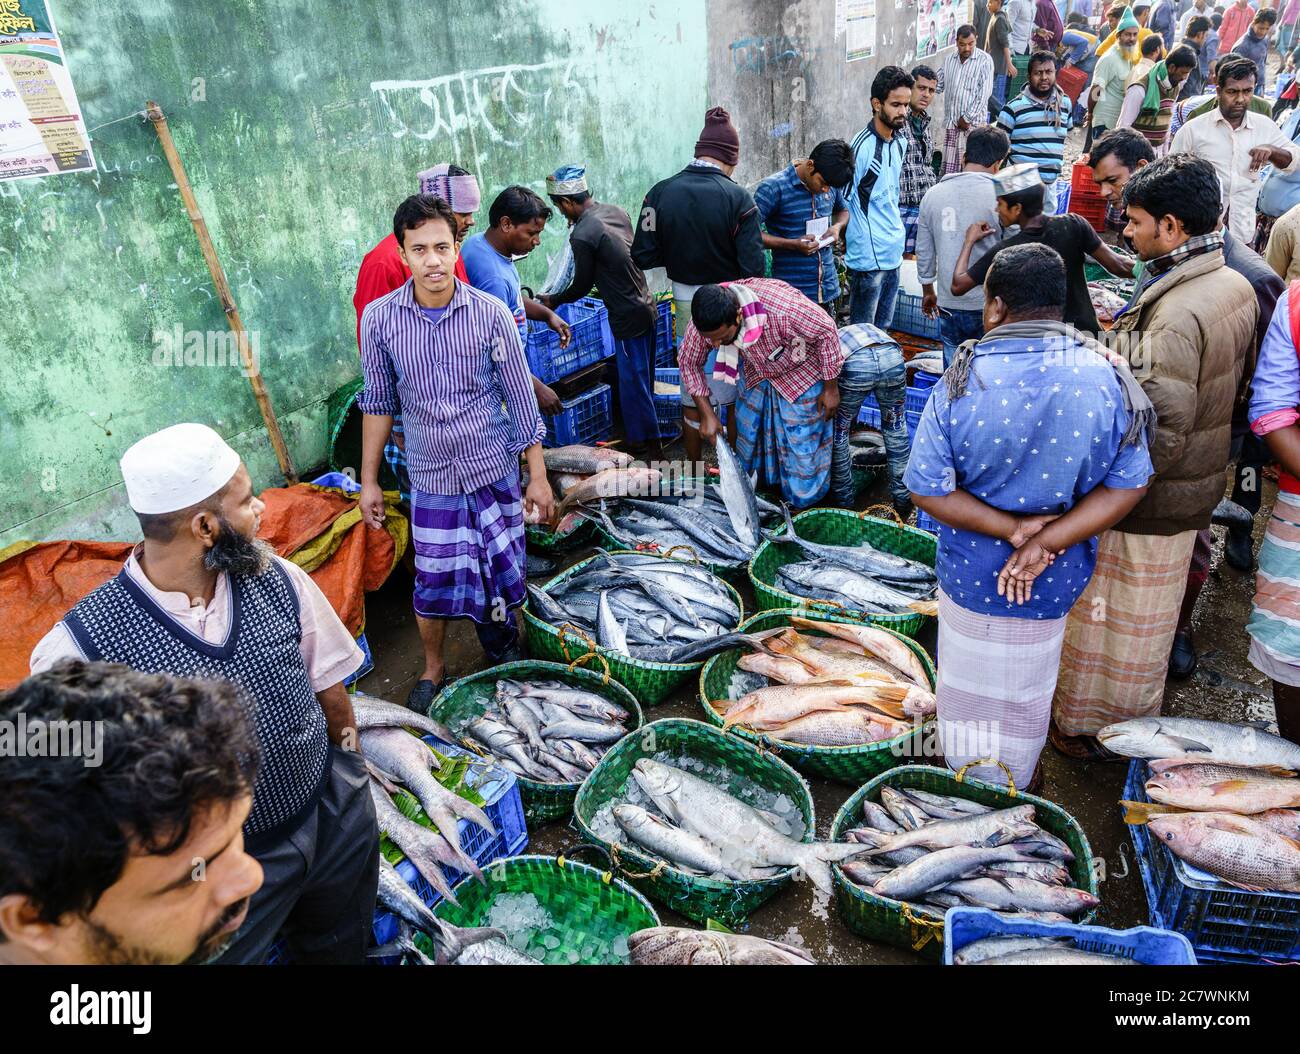 Chittagong, Bangladesh, December 23, 2017: Fish vendors at the market near Karnaphuli River in Chittagong Stock Photo